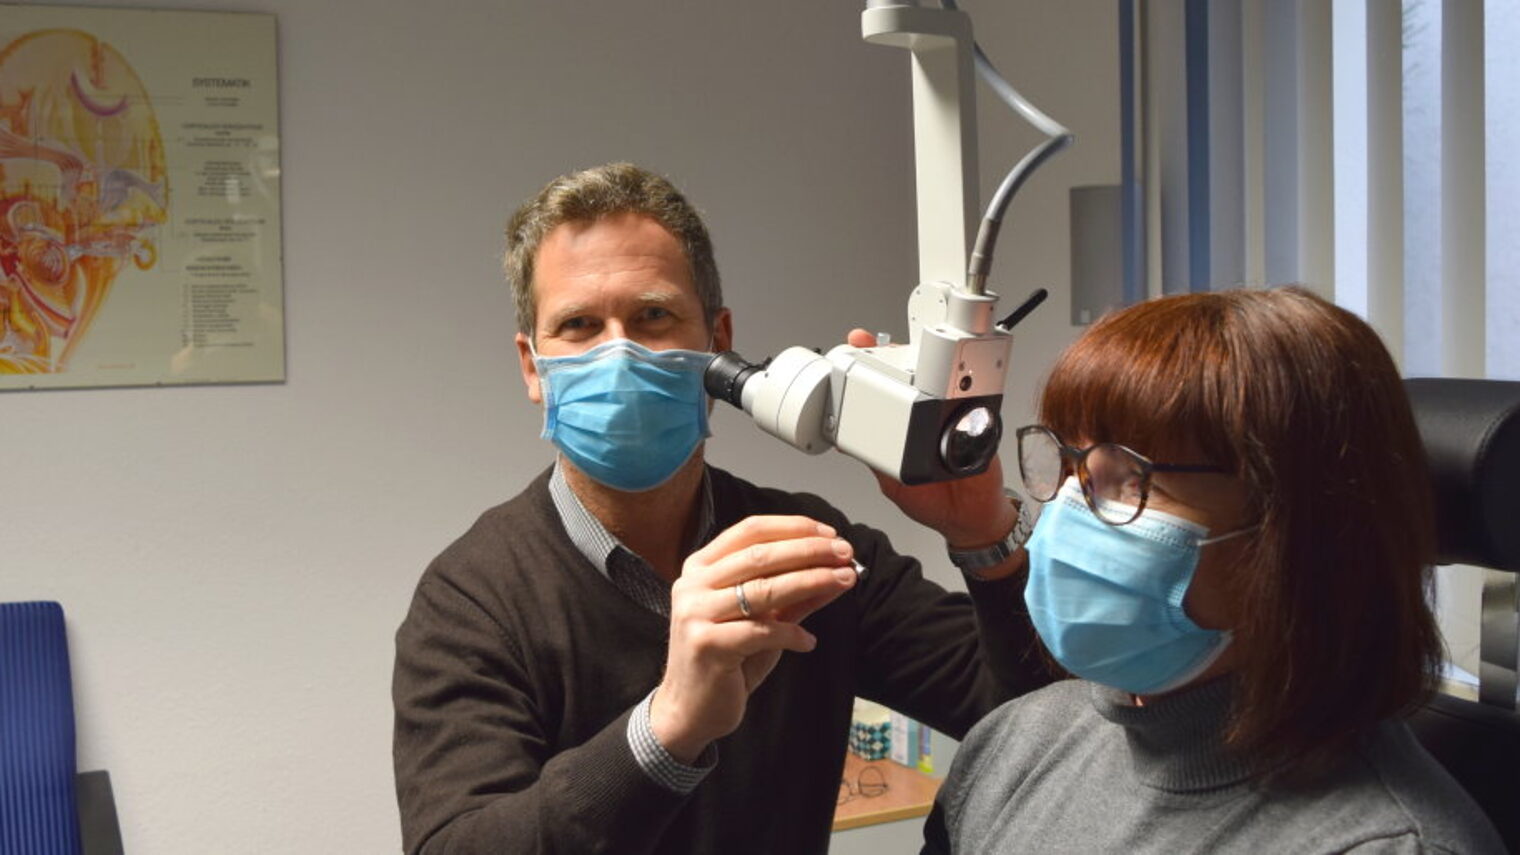 Ein Mann mit Mundschutz sitzt an einem Gerät zur Untersuchung des Gehörs einer Frau mit Mundschutz und Brille.